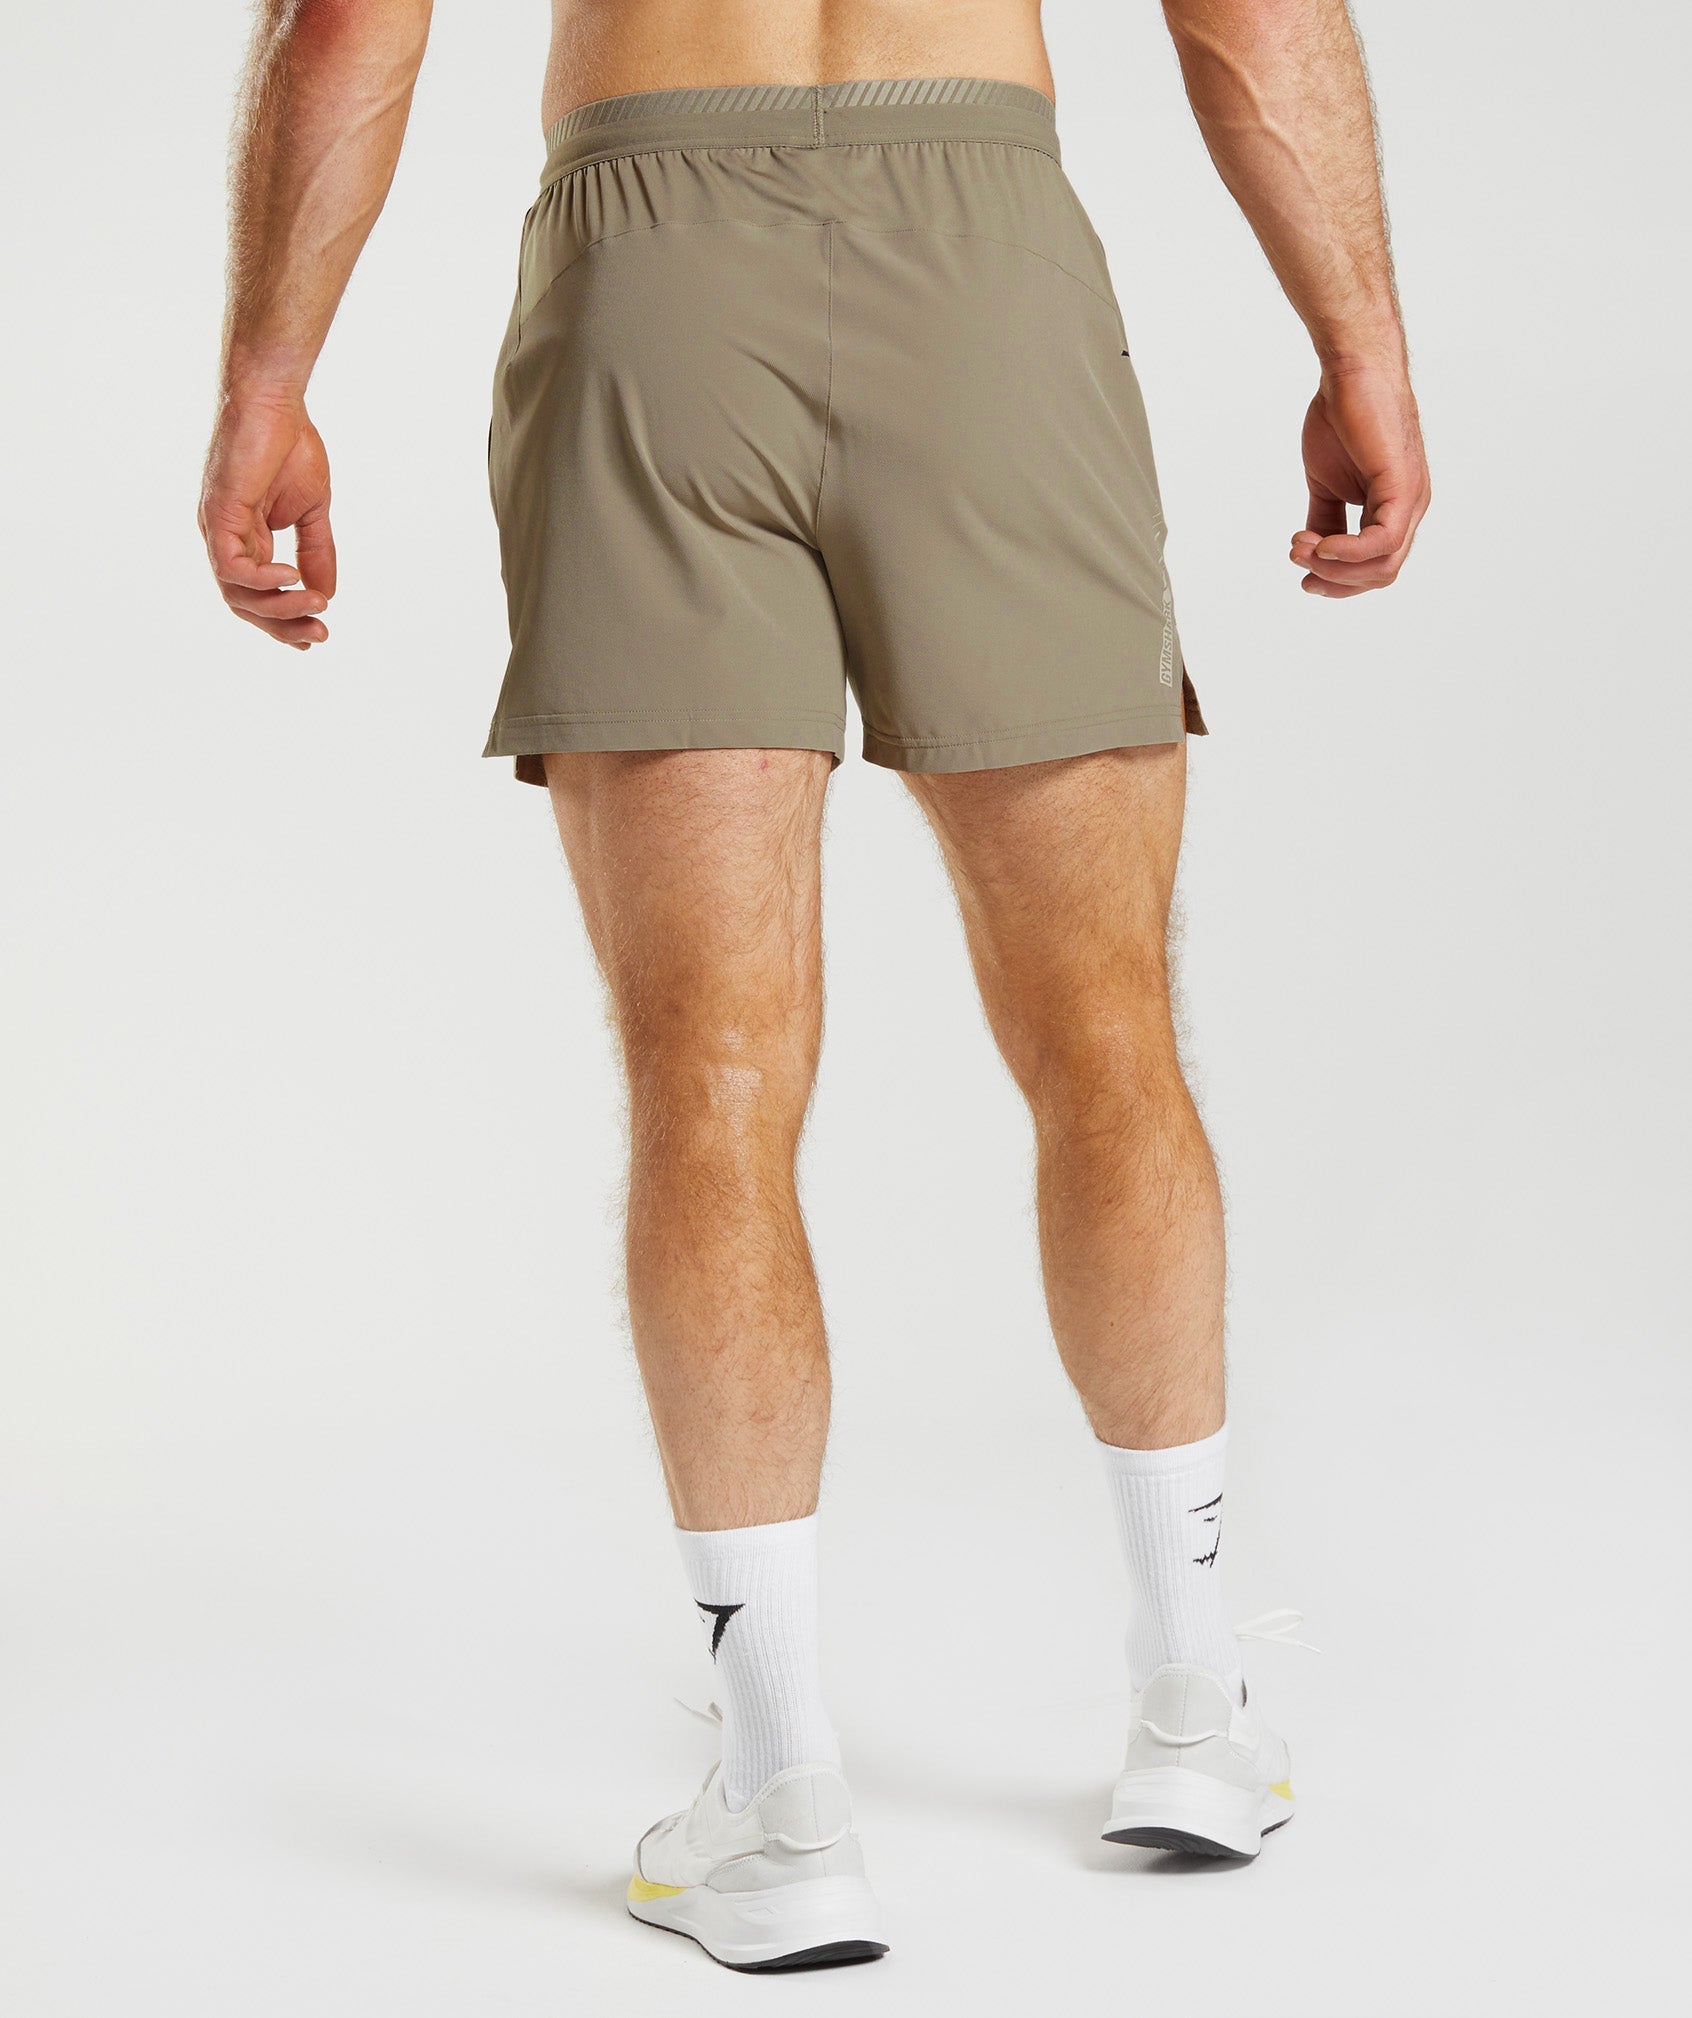 Apex 5" Hybrid Shorts